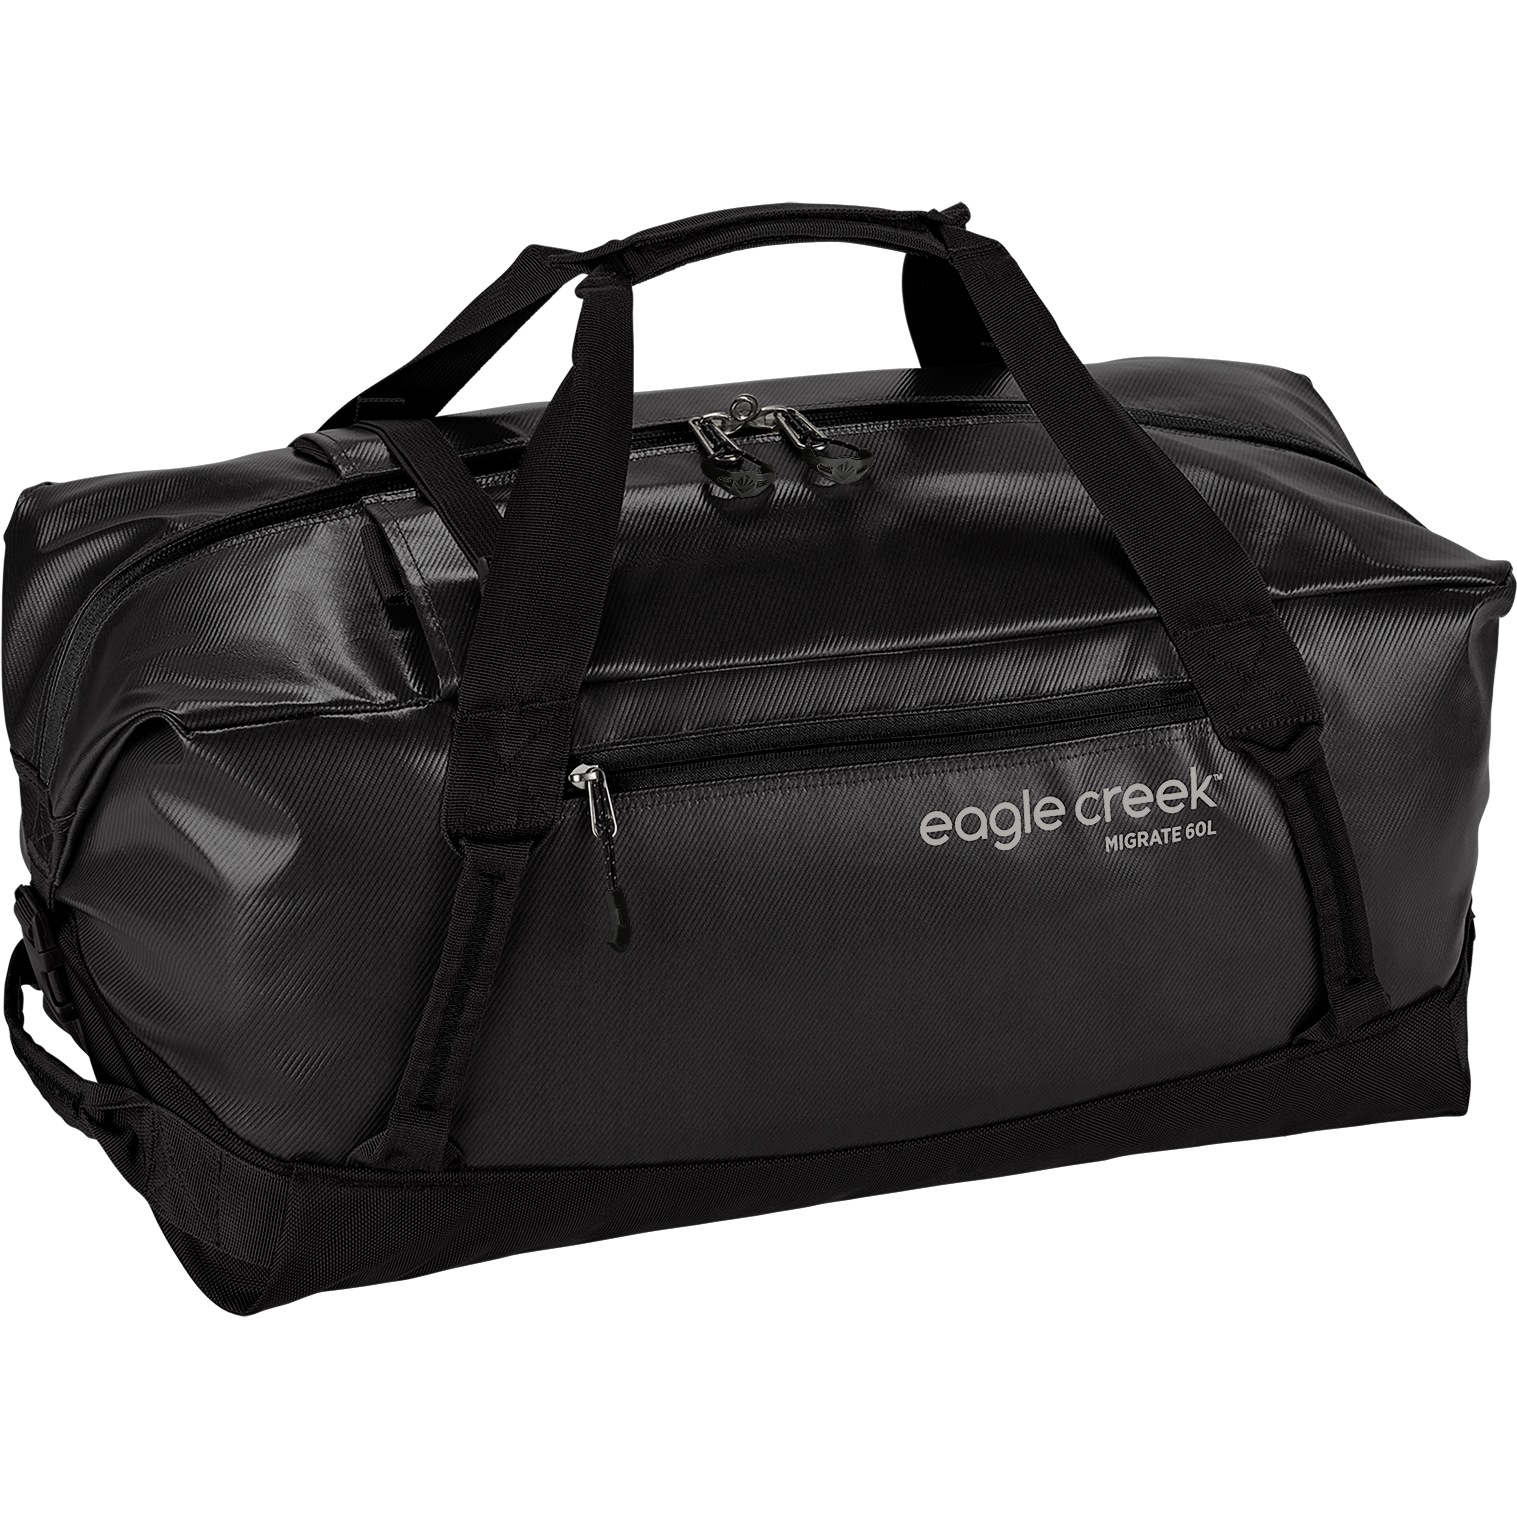 Productfoto van Eagle Creek Migrate Duffel 60L + 6L Travel Bag - black